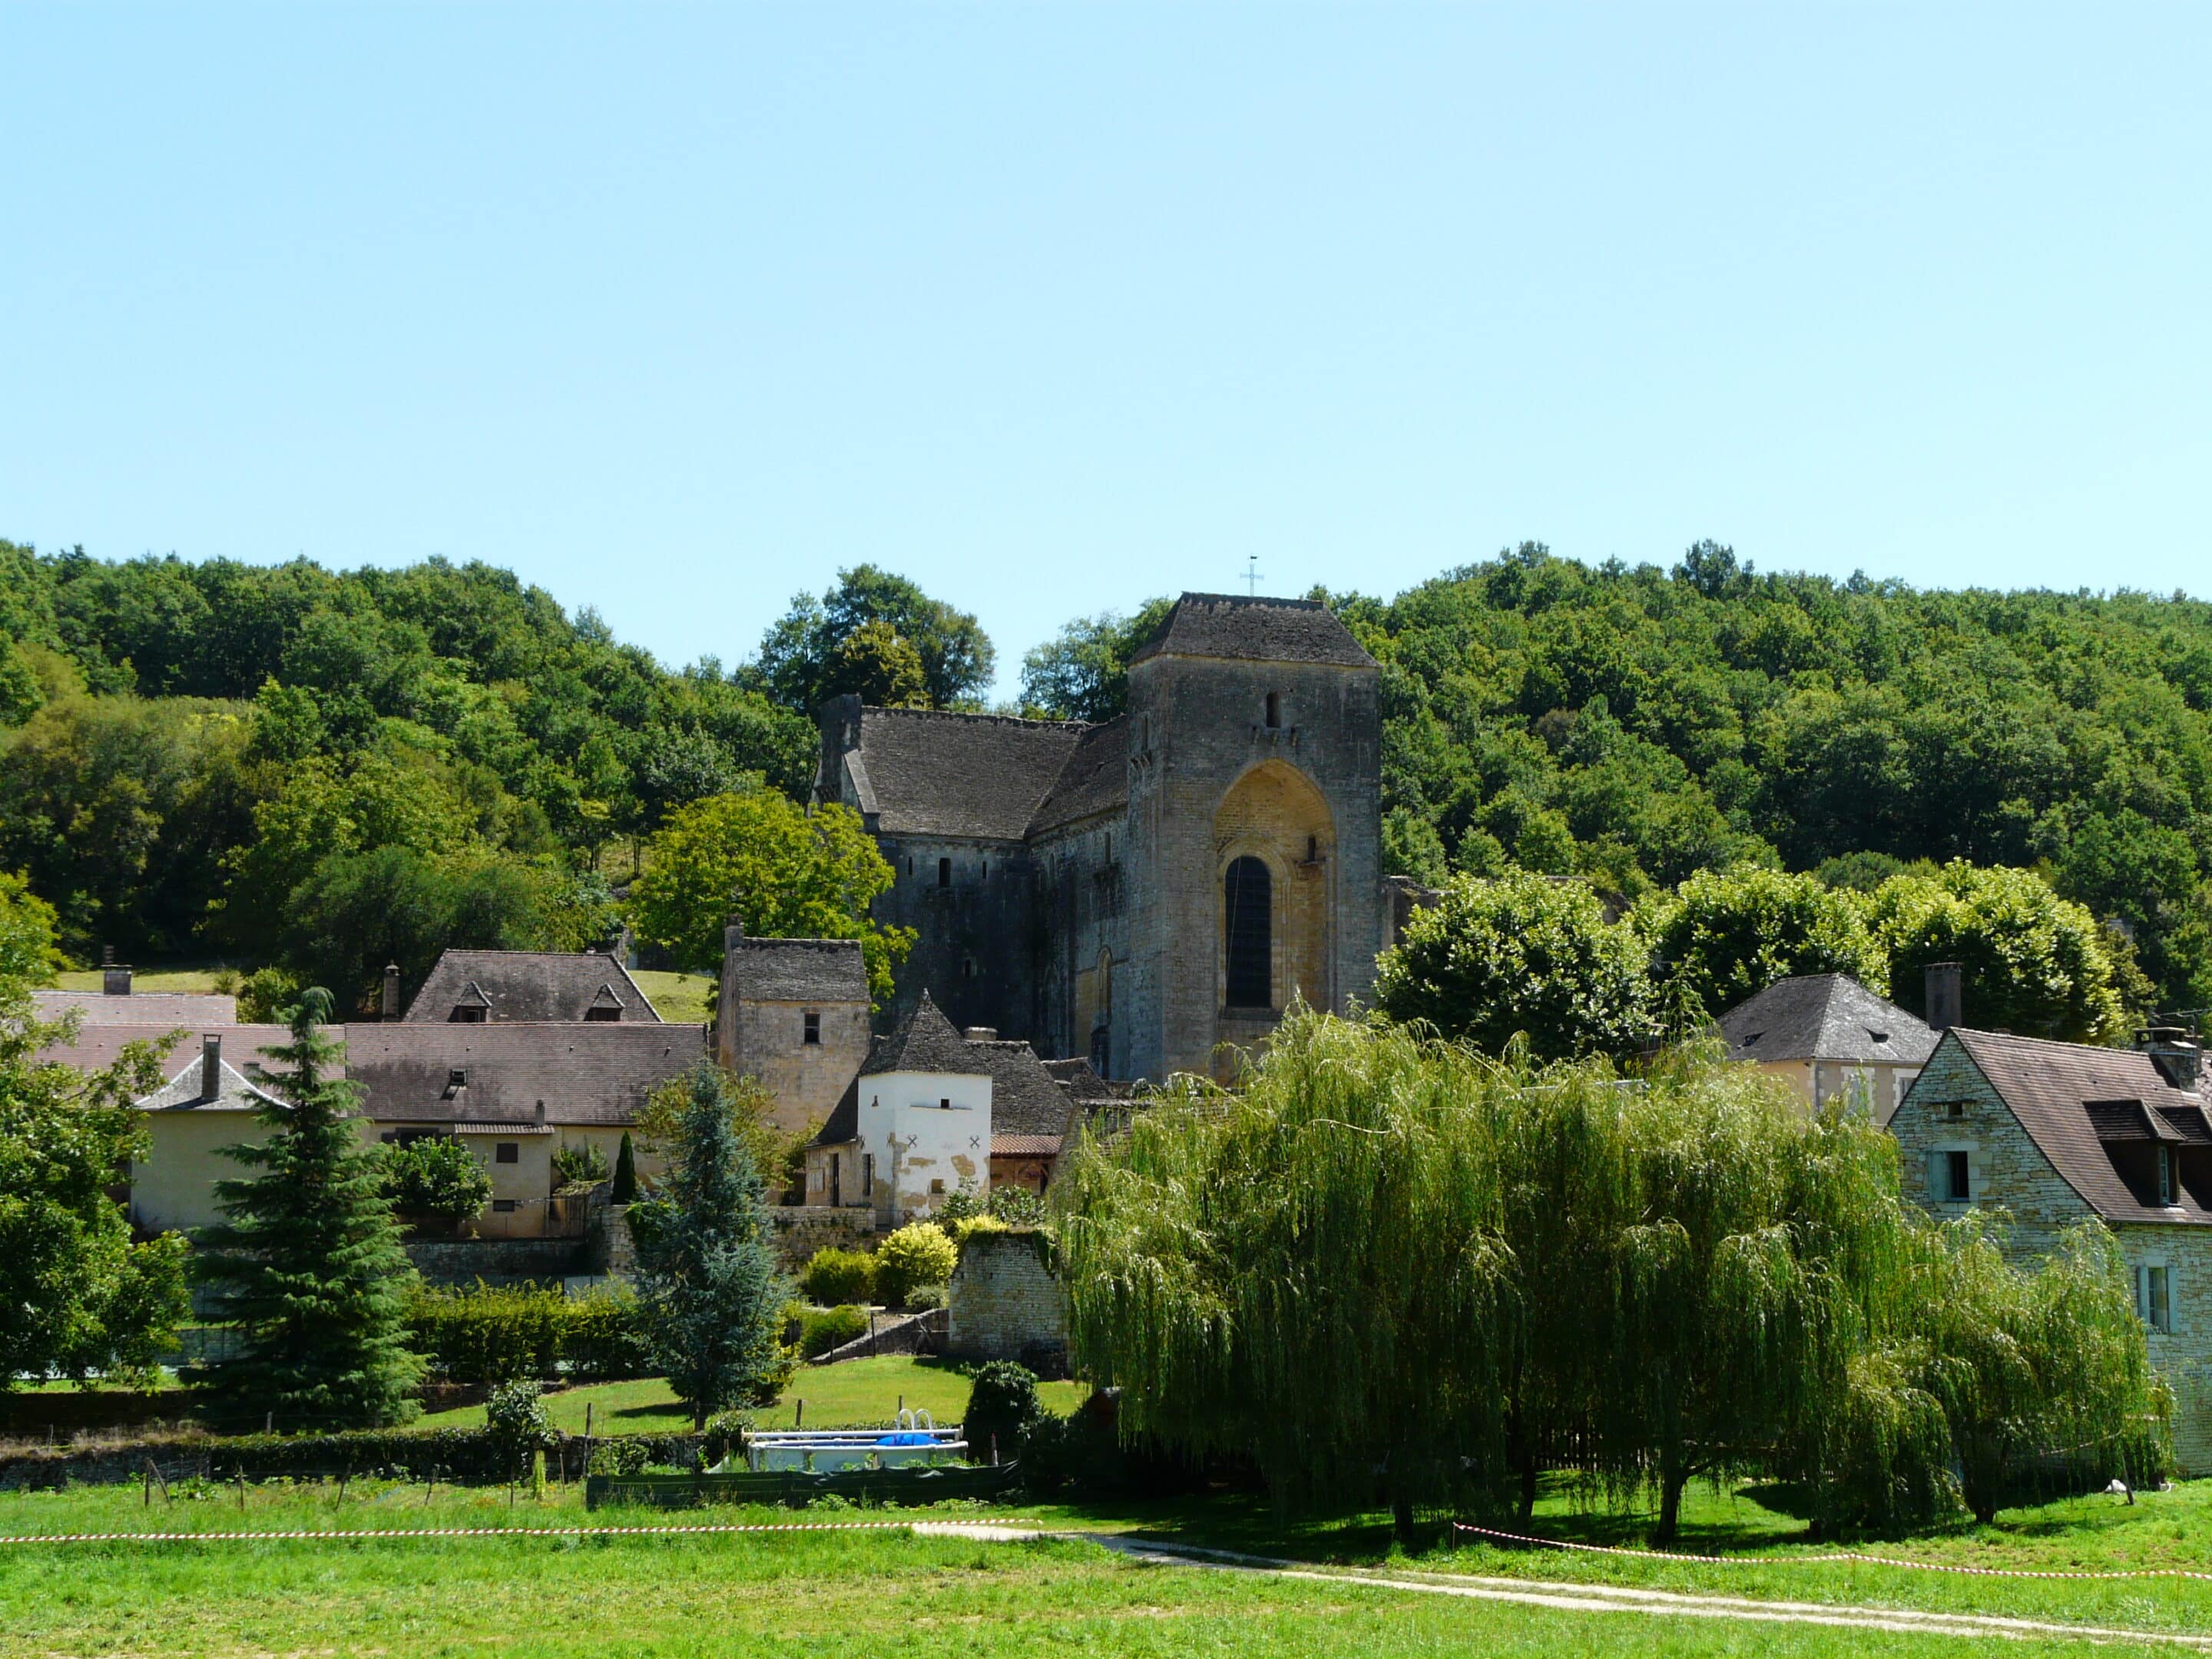 Le village de Saint-Amand-de-Coly.
Wiki Commons